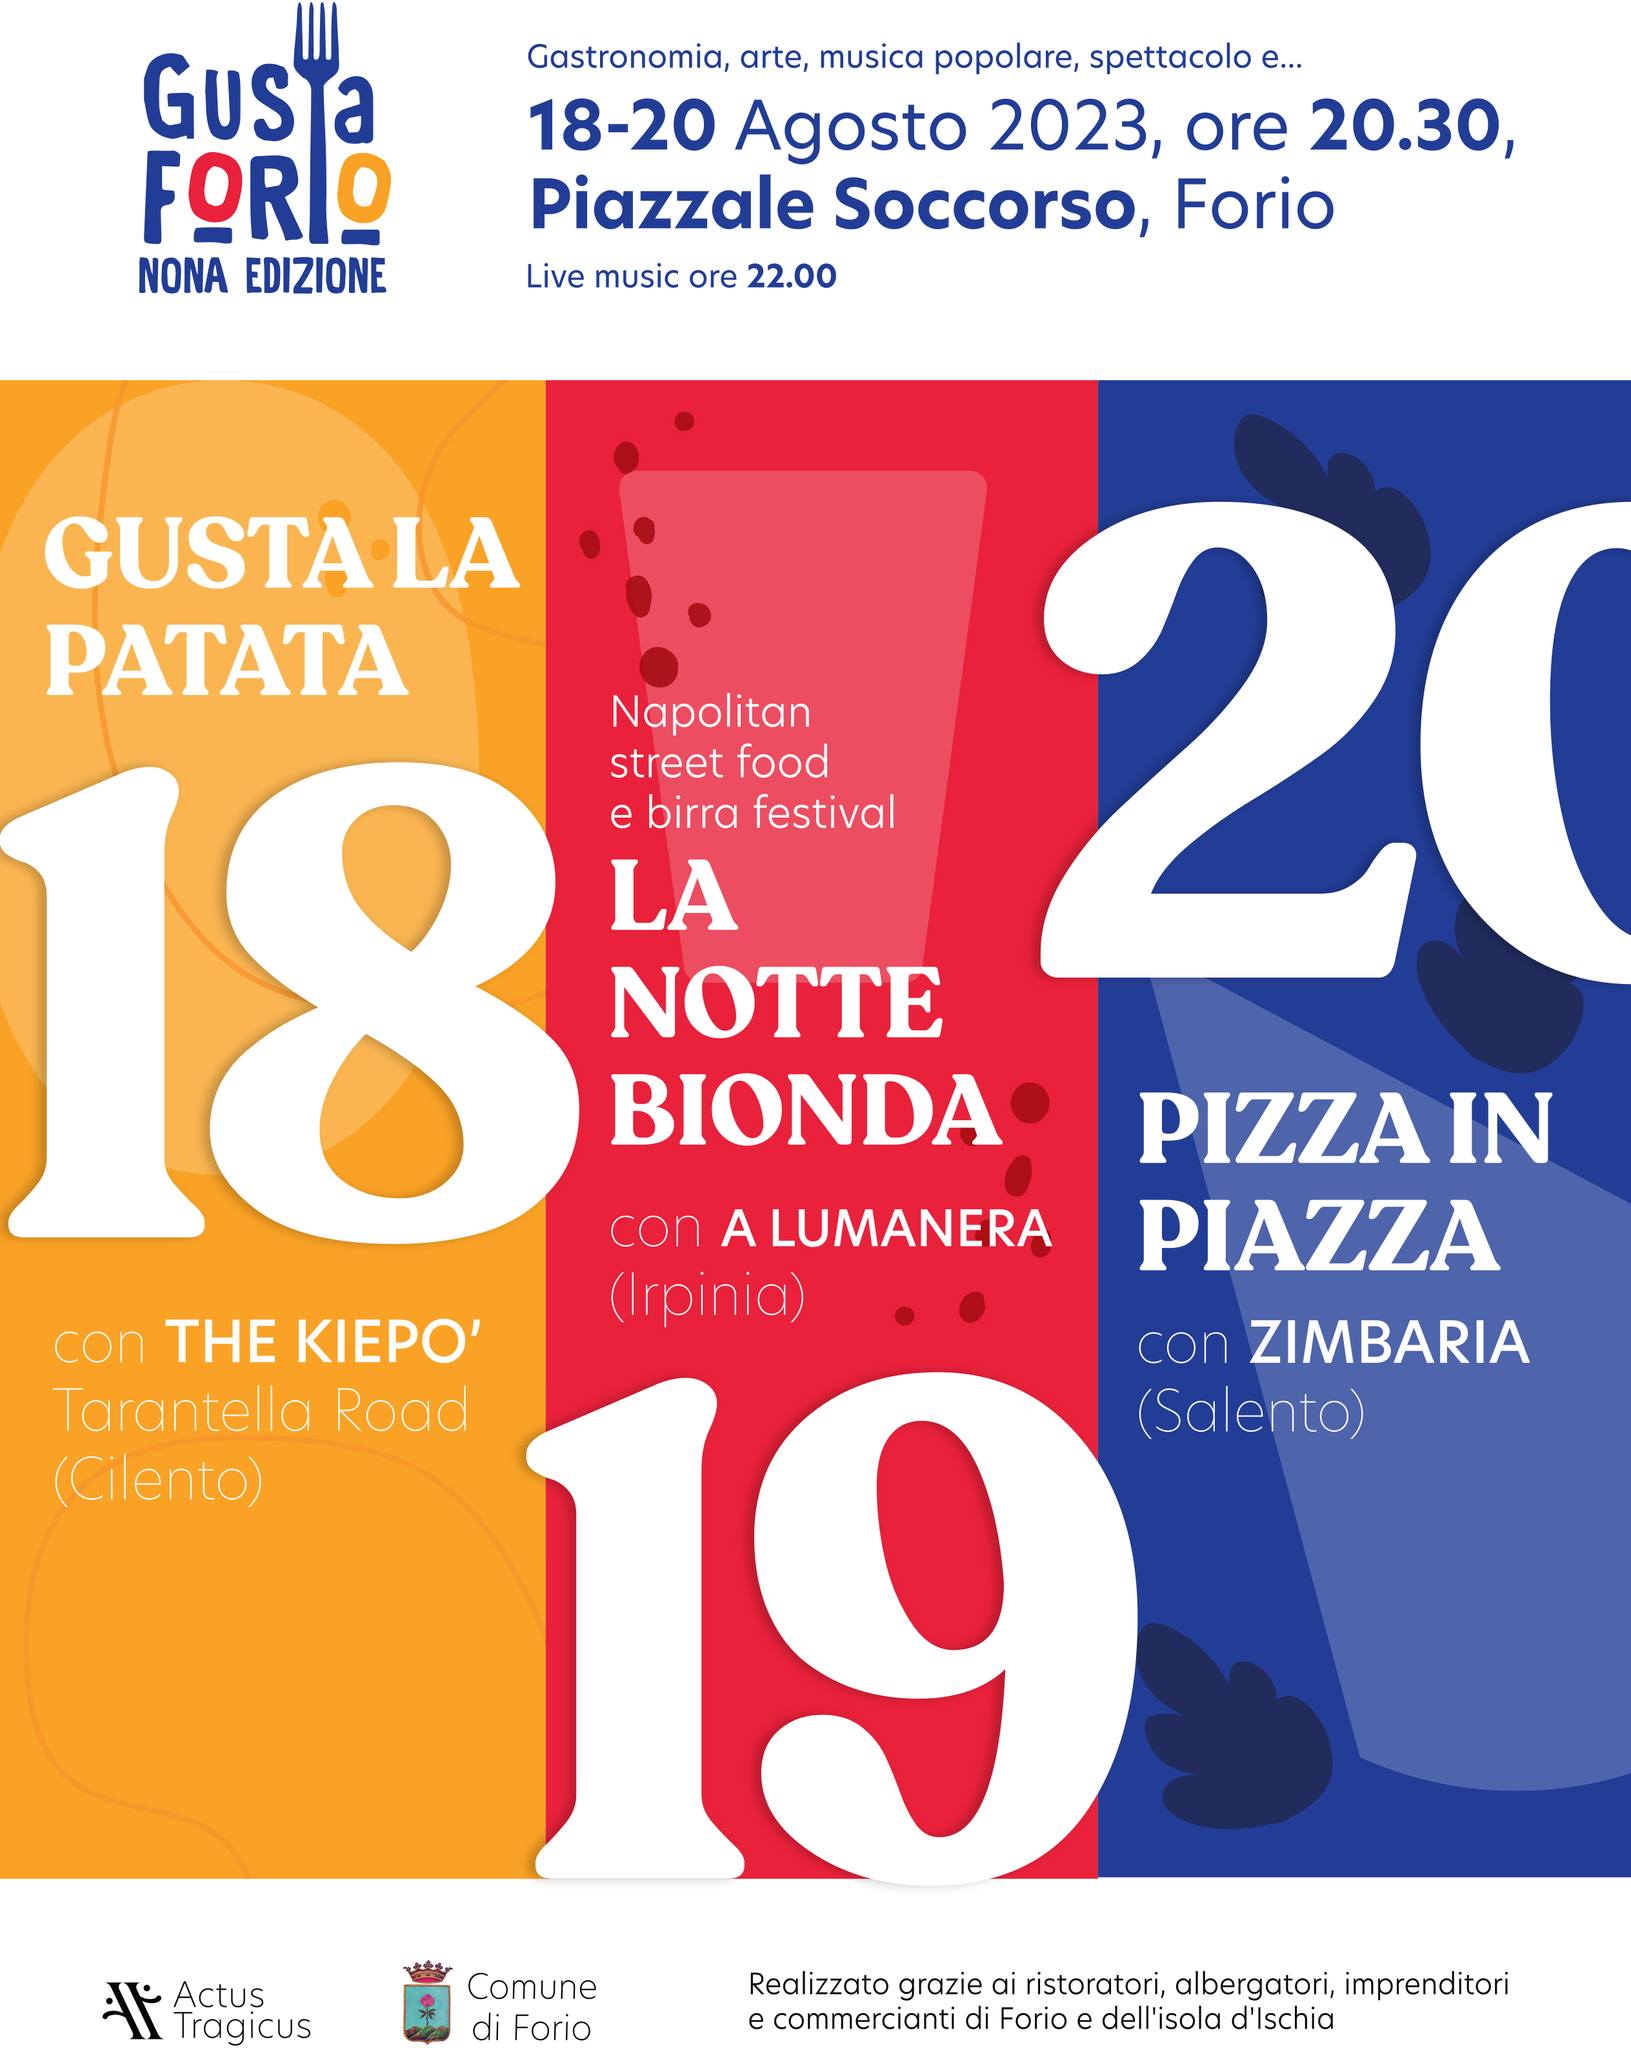 Gusta Forio: pizza in piazza